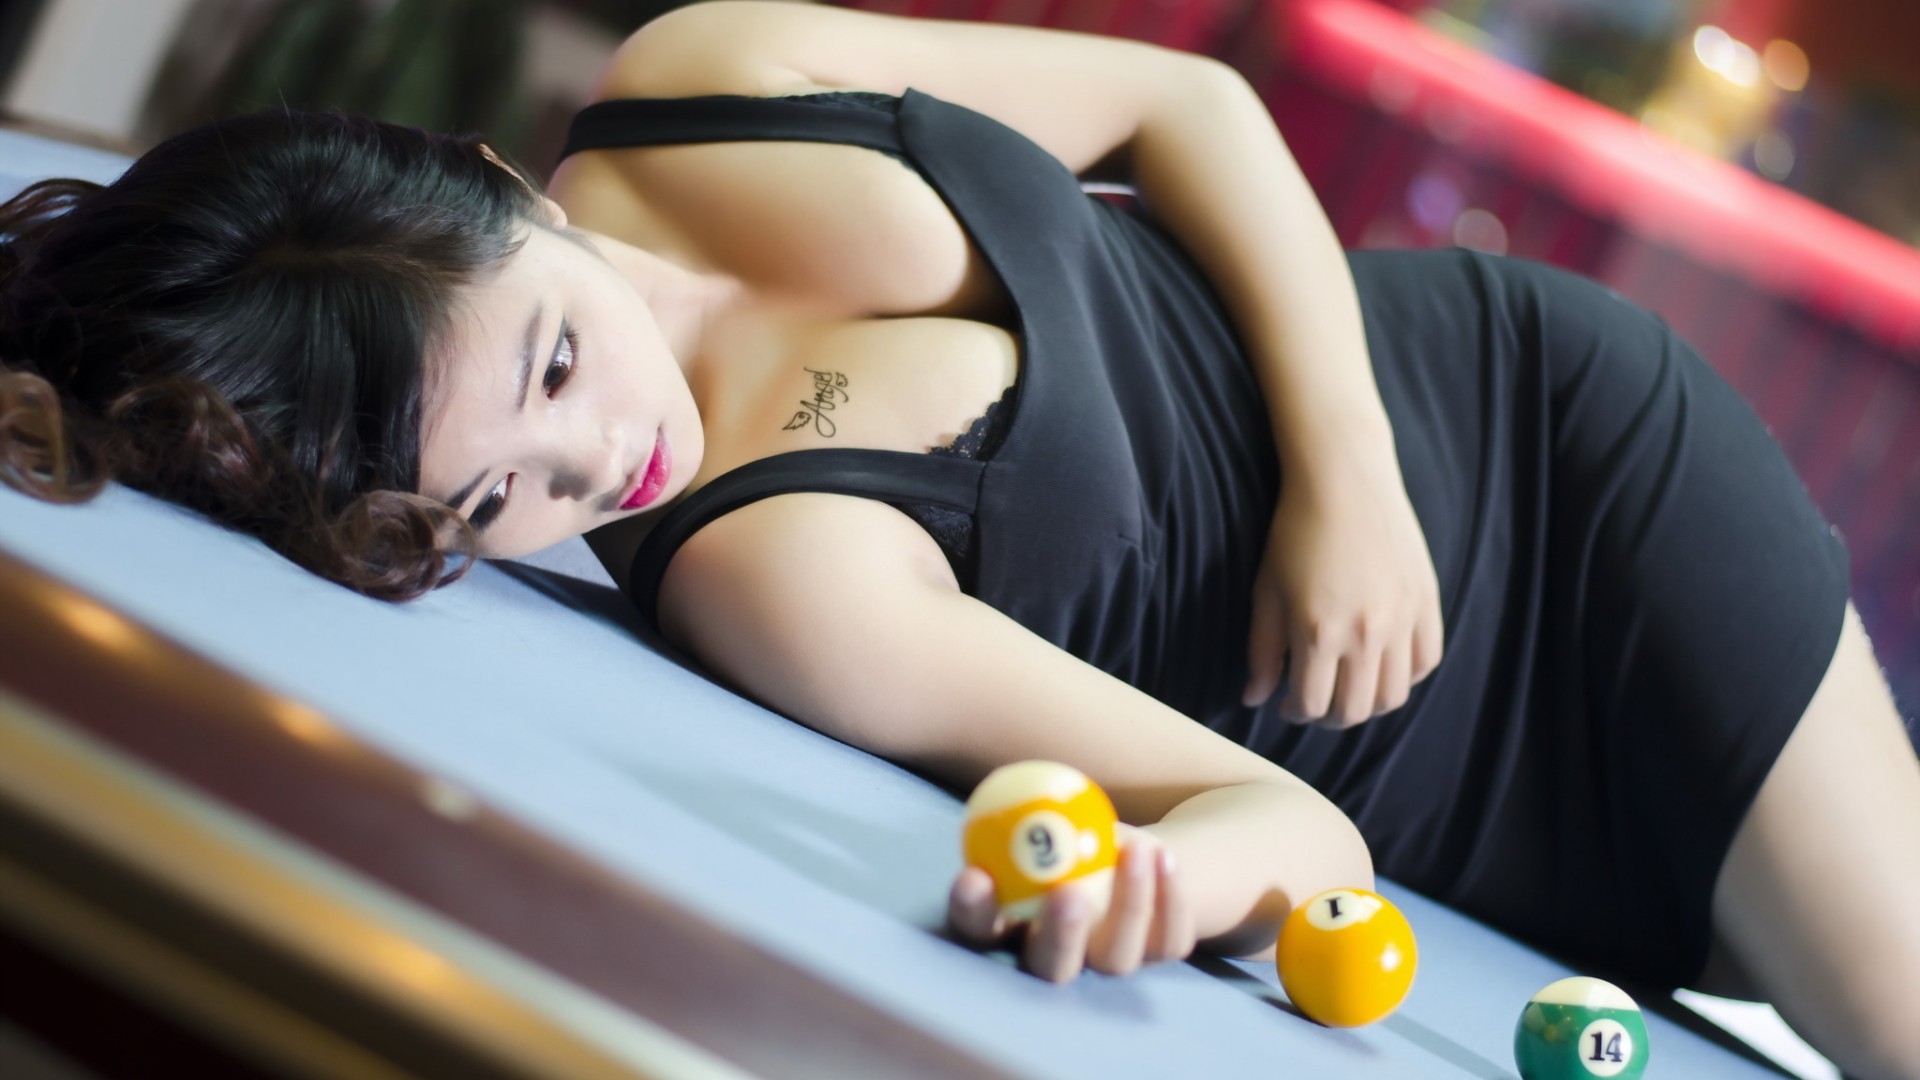 People 1920x1080 women cleavage Asian pool table boobs dark hair billiard balls women indoors indoors model numbers lying down